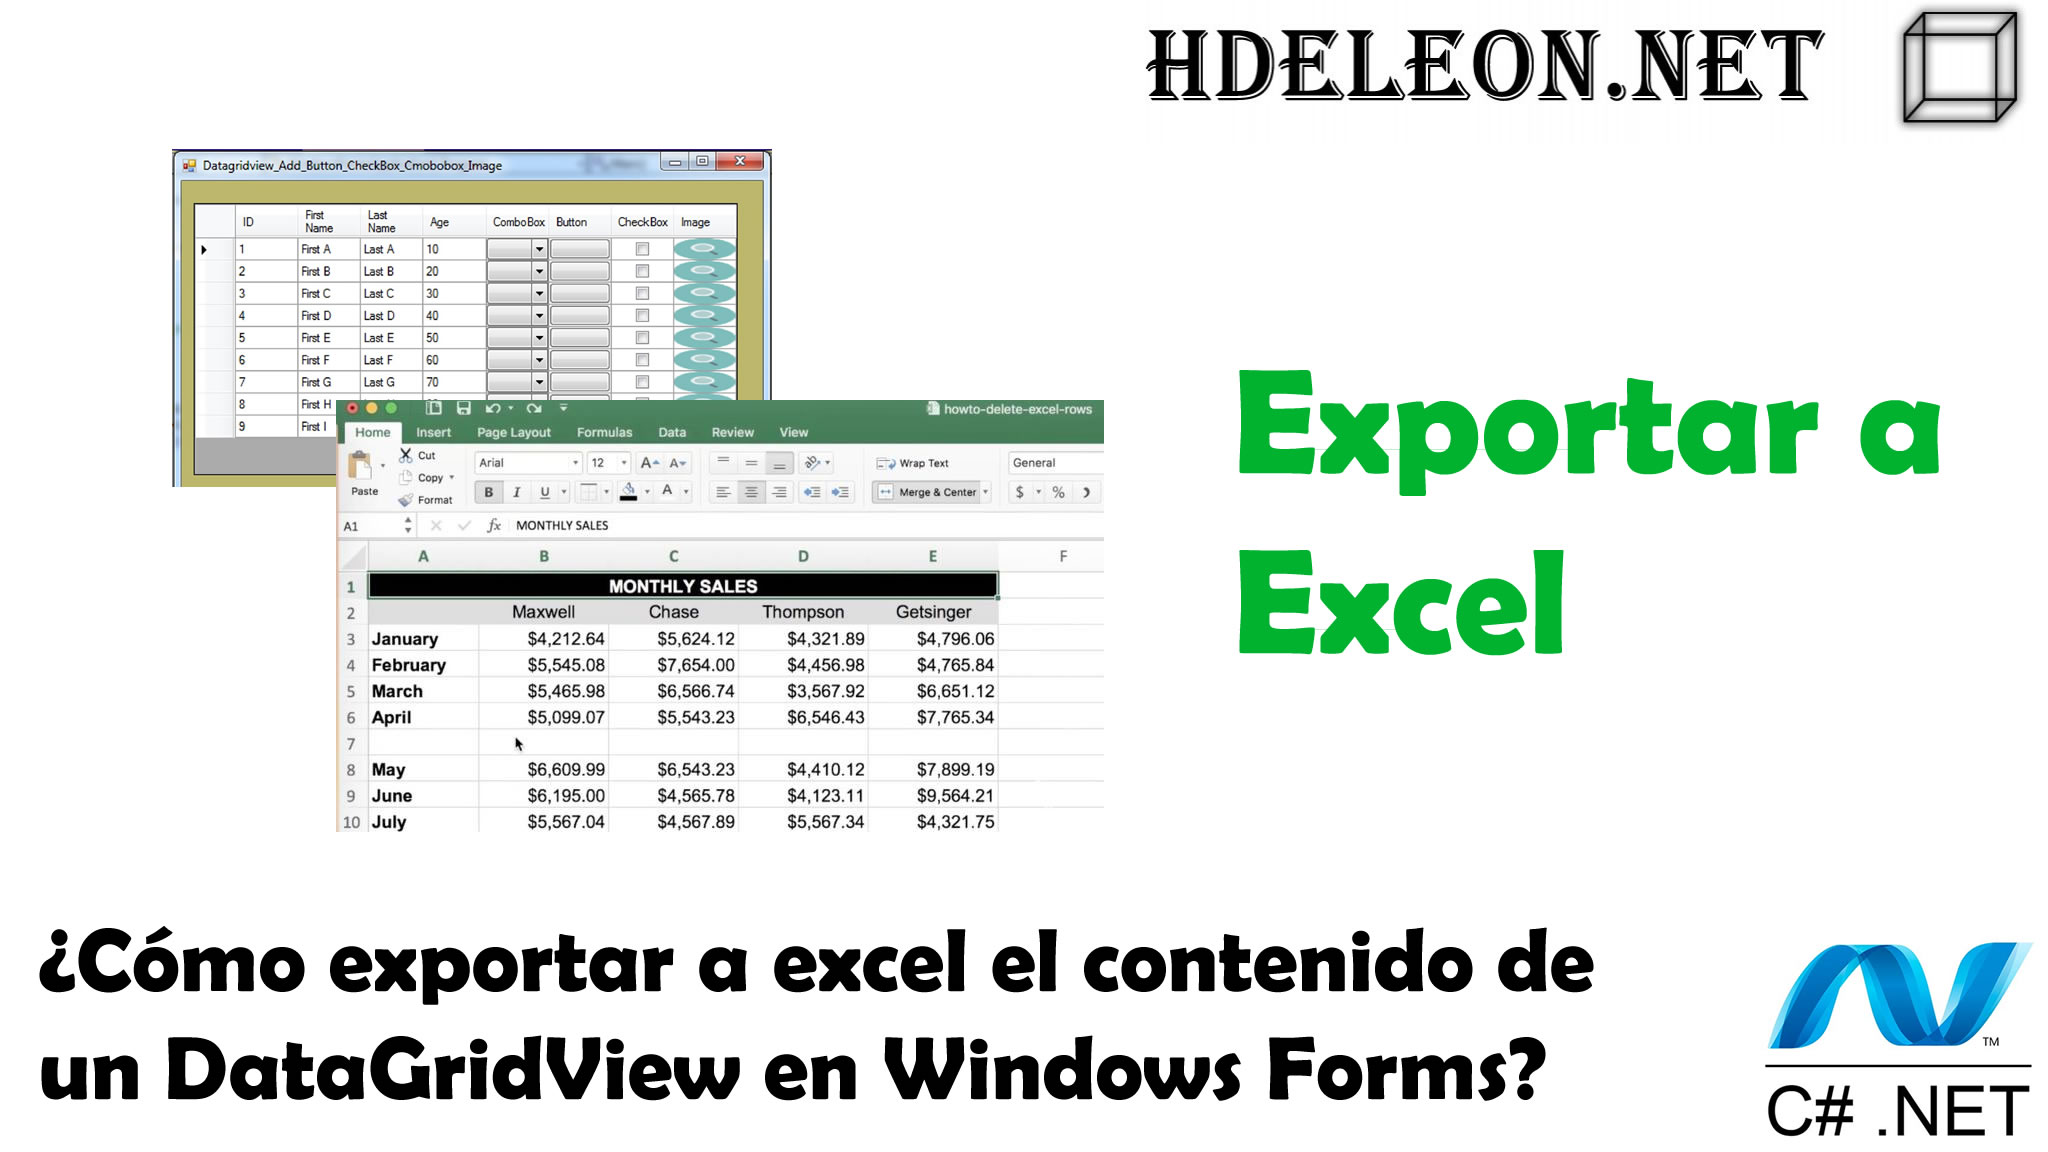 ¿Cómo exportar a excel el contenido de un DataGridView de Windows Forms?